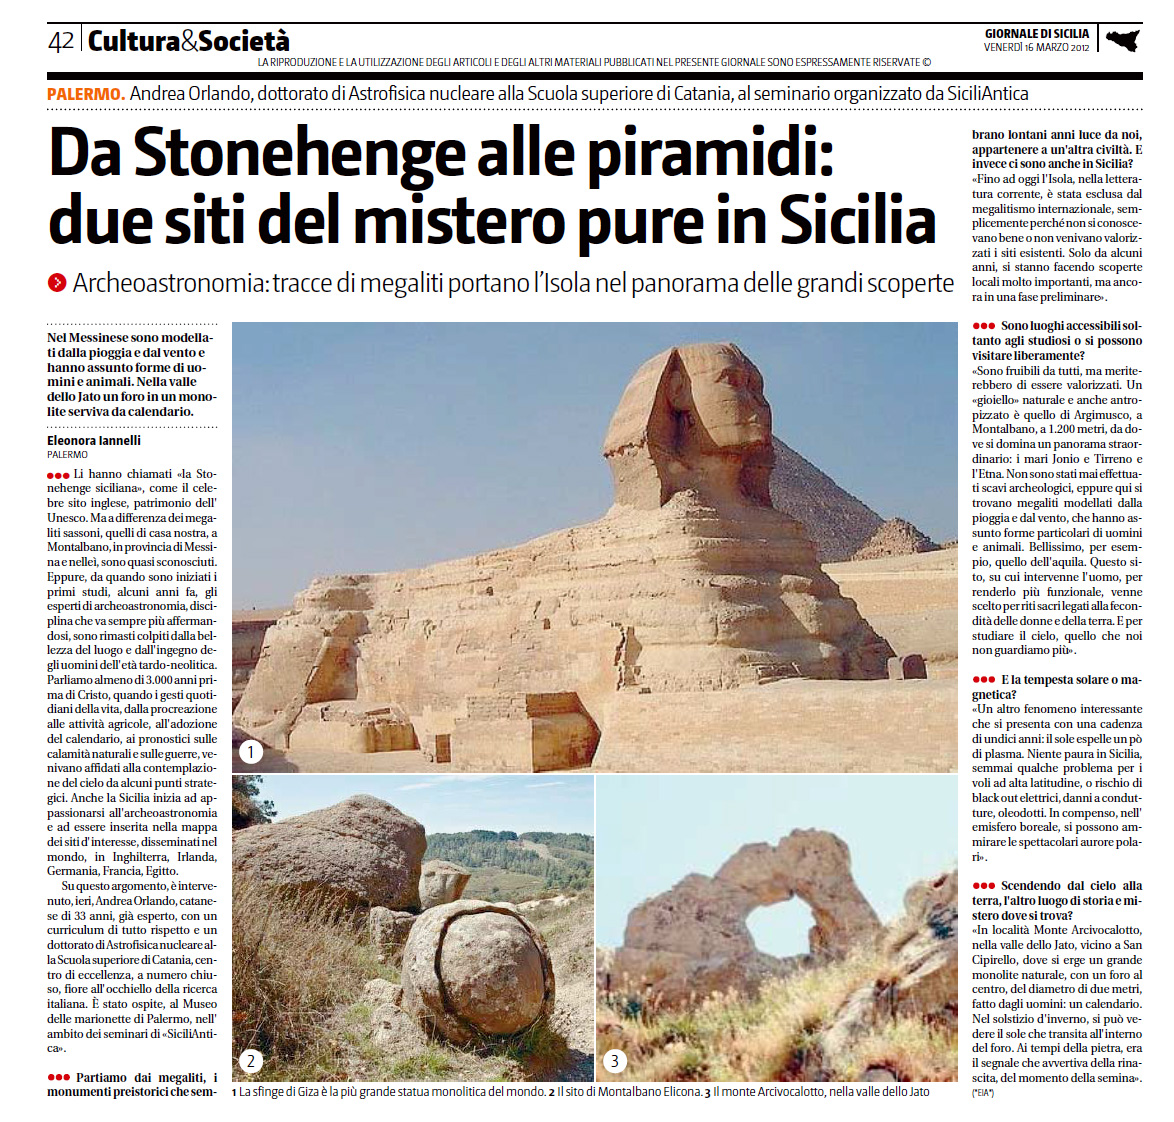 Giornale di Sicilia, 16 marzo 2012